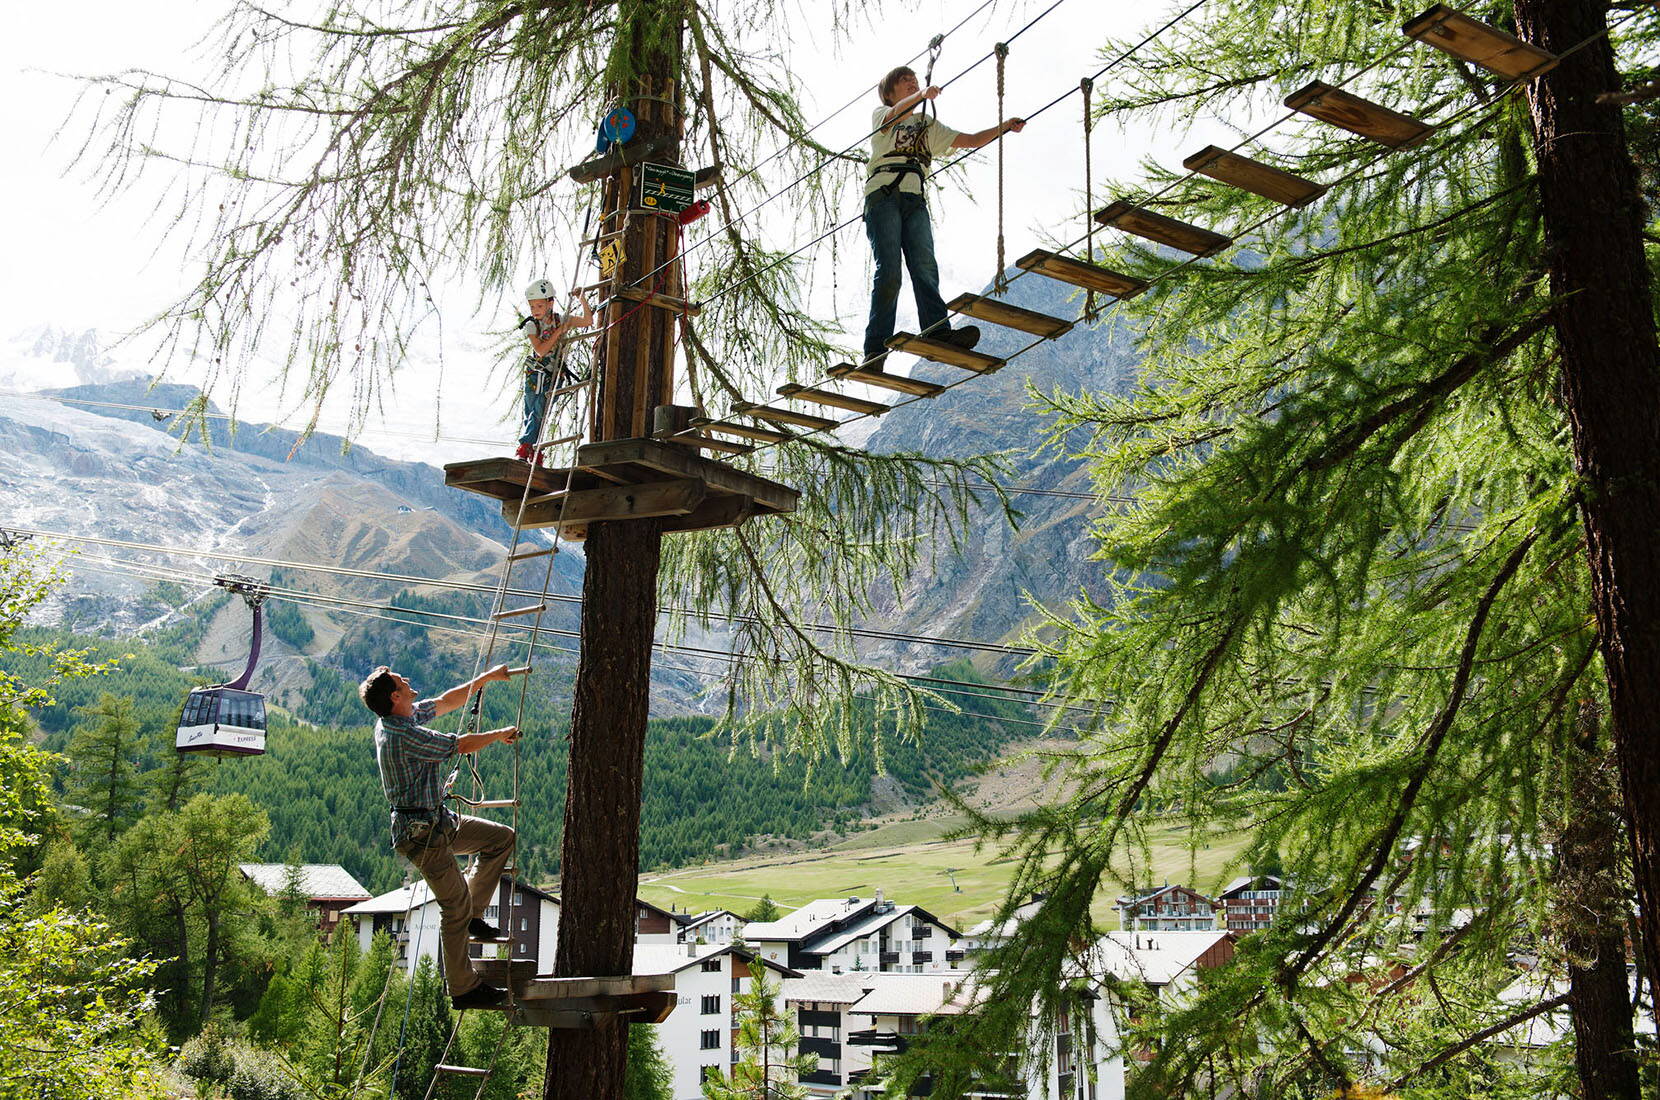 Im Kletterpark hangelt man sich von Baum zu Baum und überwindet verschiedene Hindernisse in den Baumwipfeln.